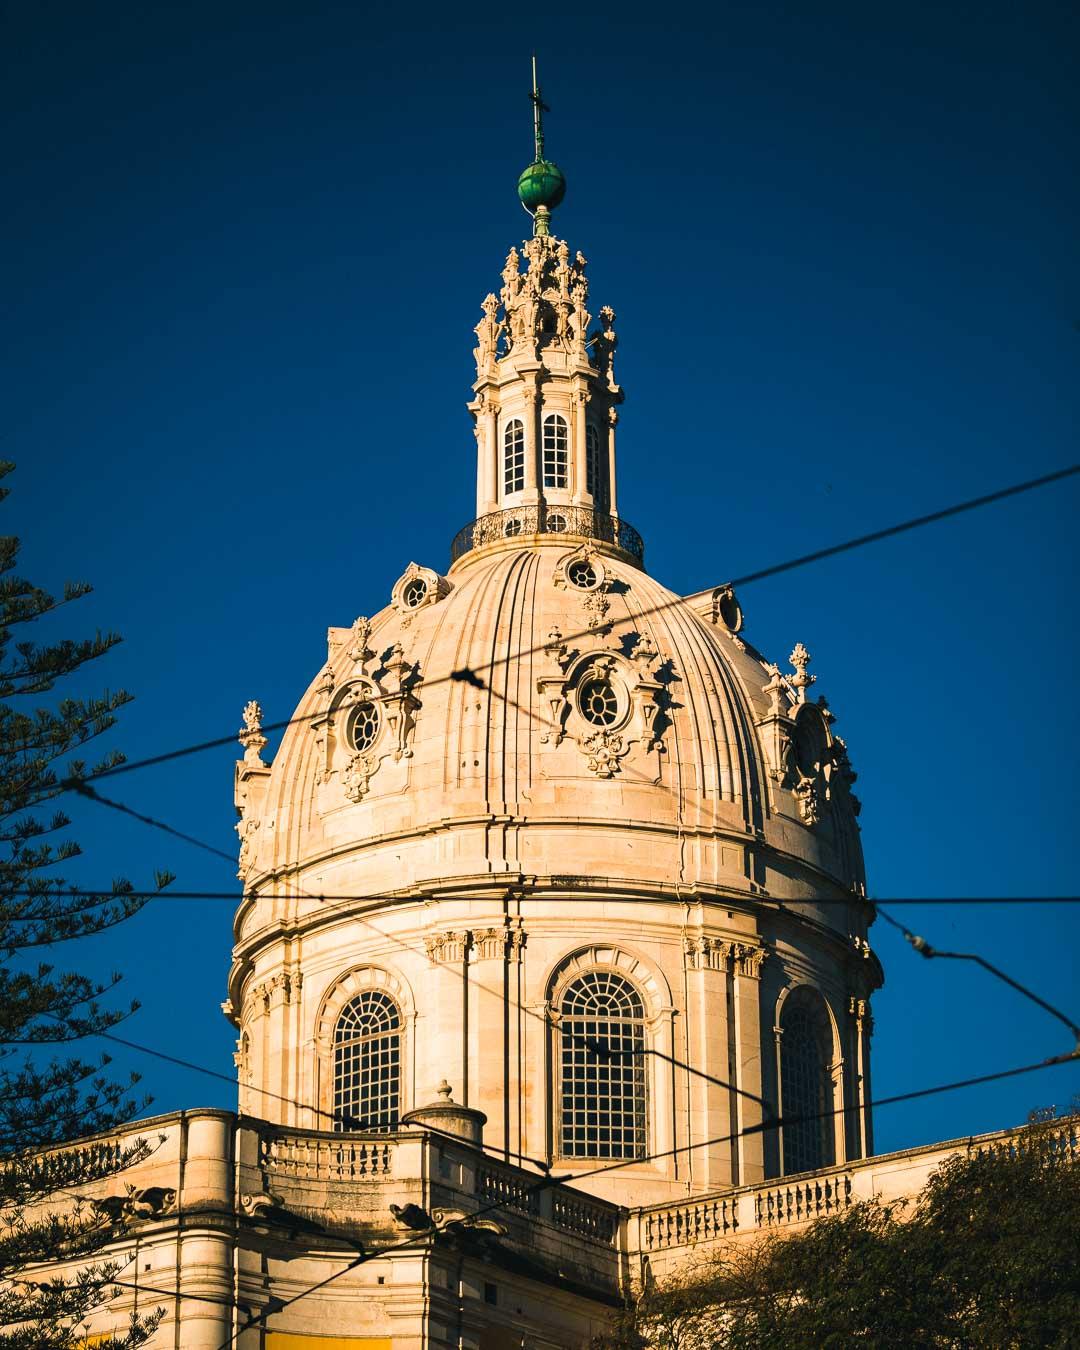 the dome of the estrela basilica